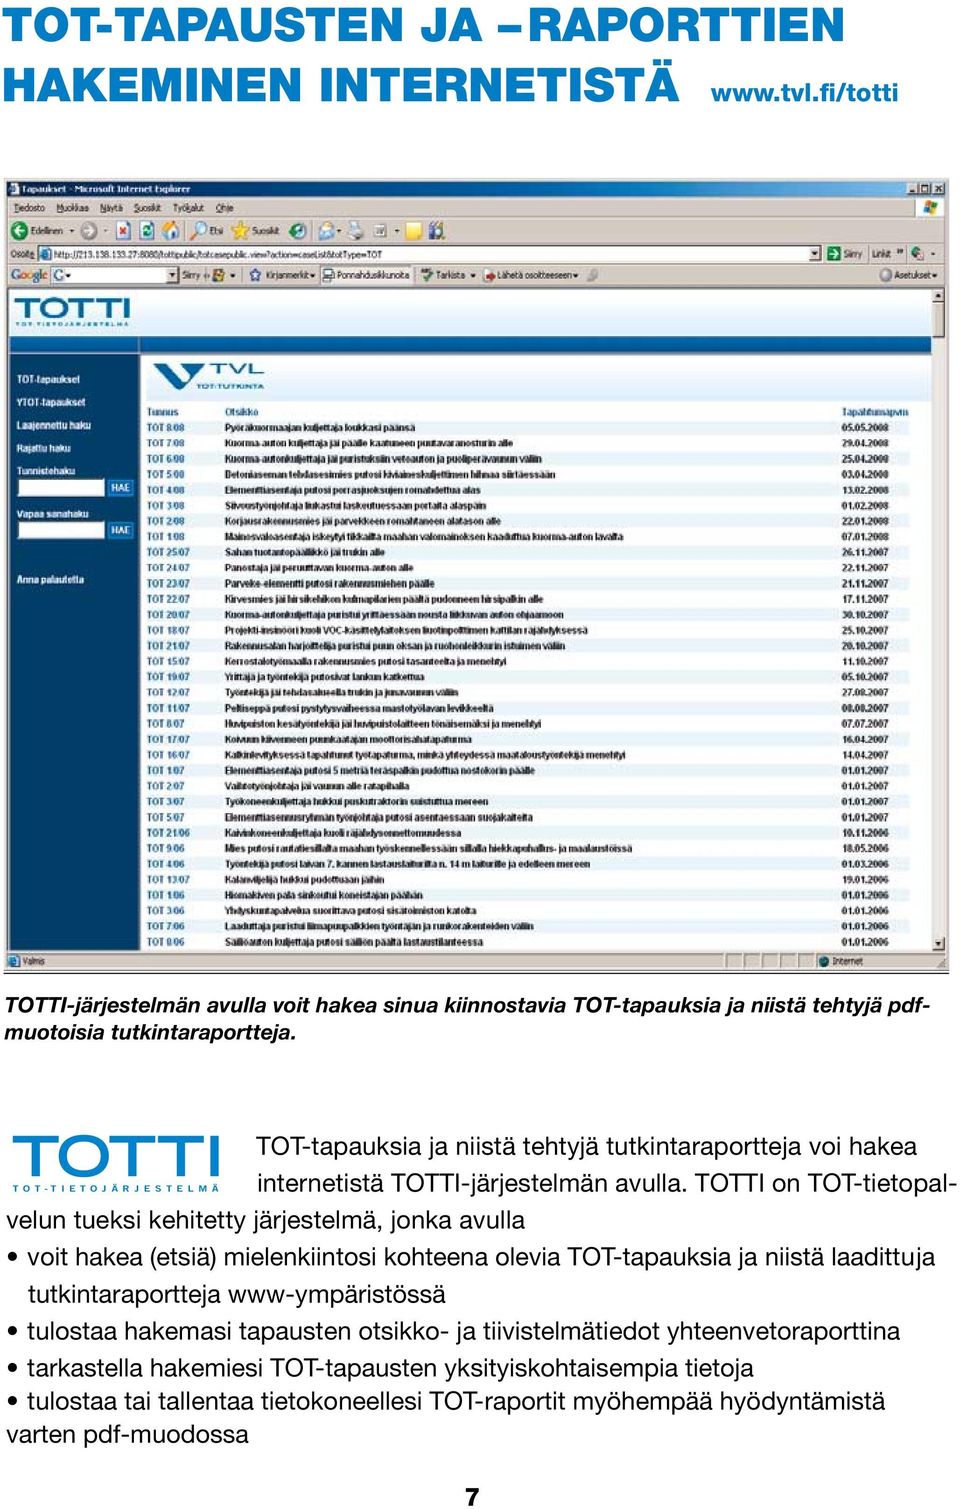 TOTTI on TOT-tietopalvelun tueksi kehitetty järjestelmä, jonka avulla voit hakea (etsiä) mielenkiintosi kohteena olevia TOT-tapauksia ja niistä laadittu ja tutkintaraportteja www-ympäristössä